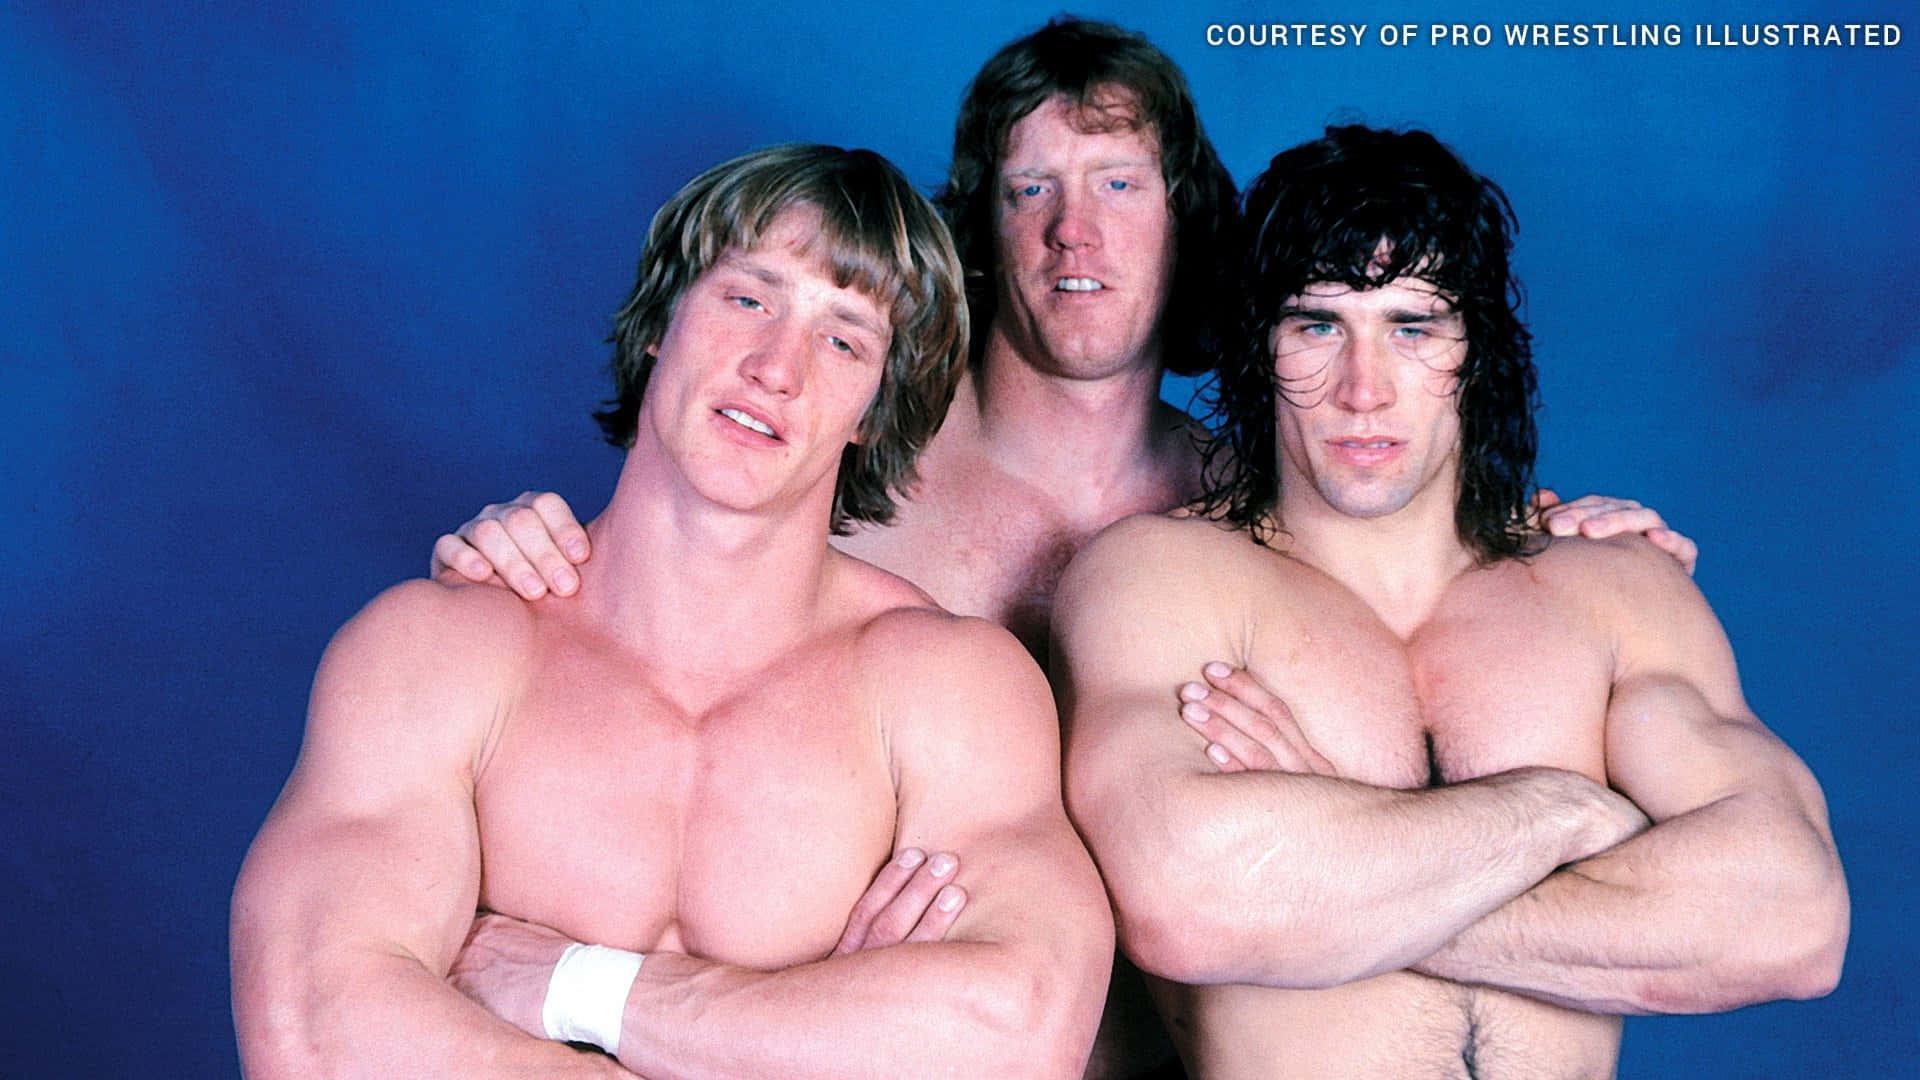 Amerikansk professionel wrestler David Von Erich med Kerry og Kevin. Wallpaper